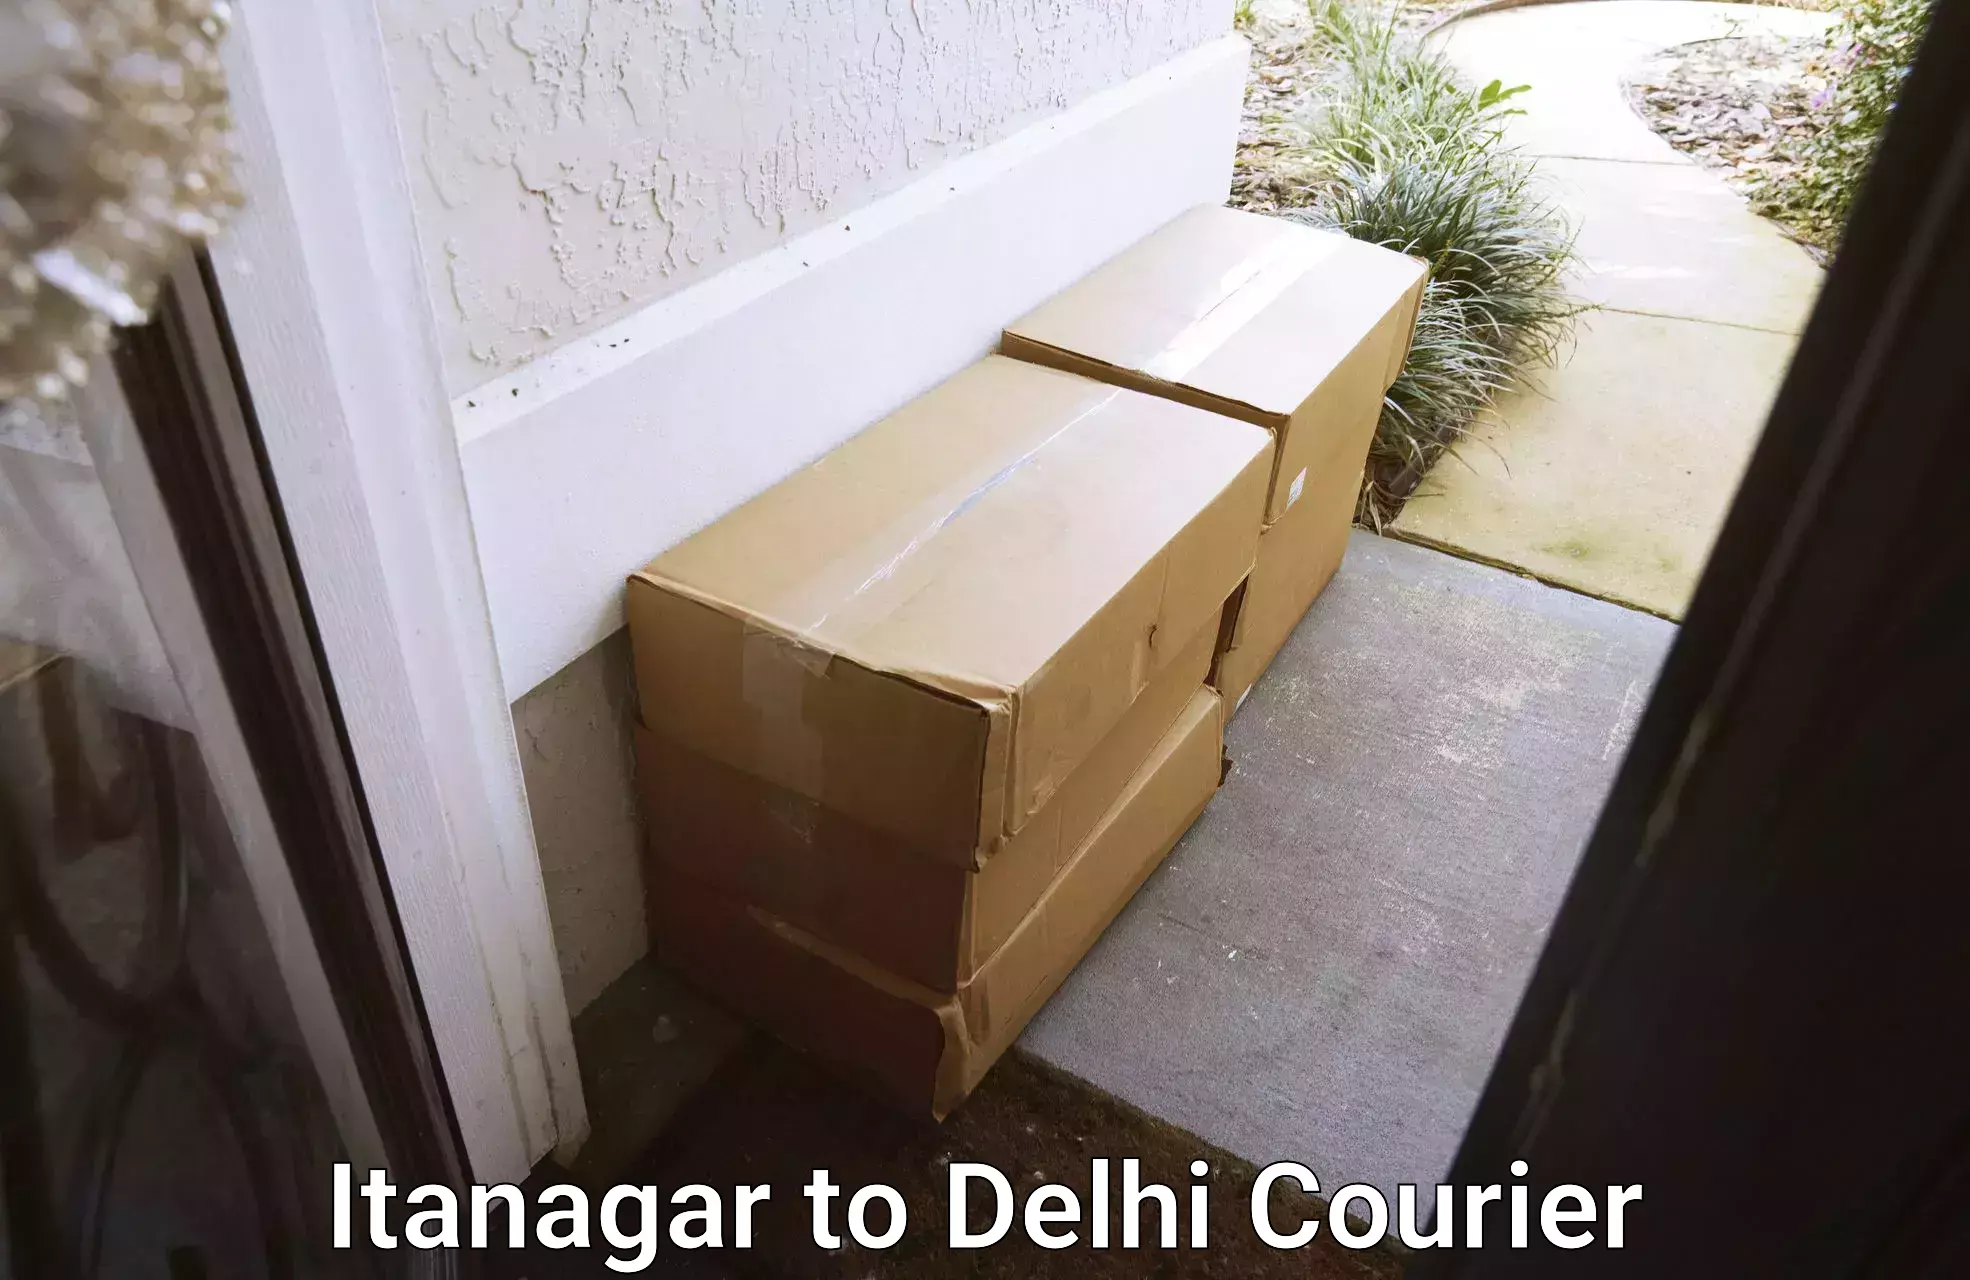 High-speed logistics services Itanagar to Delhi